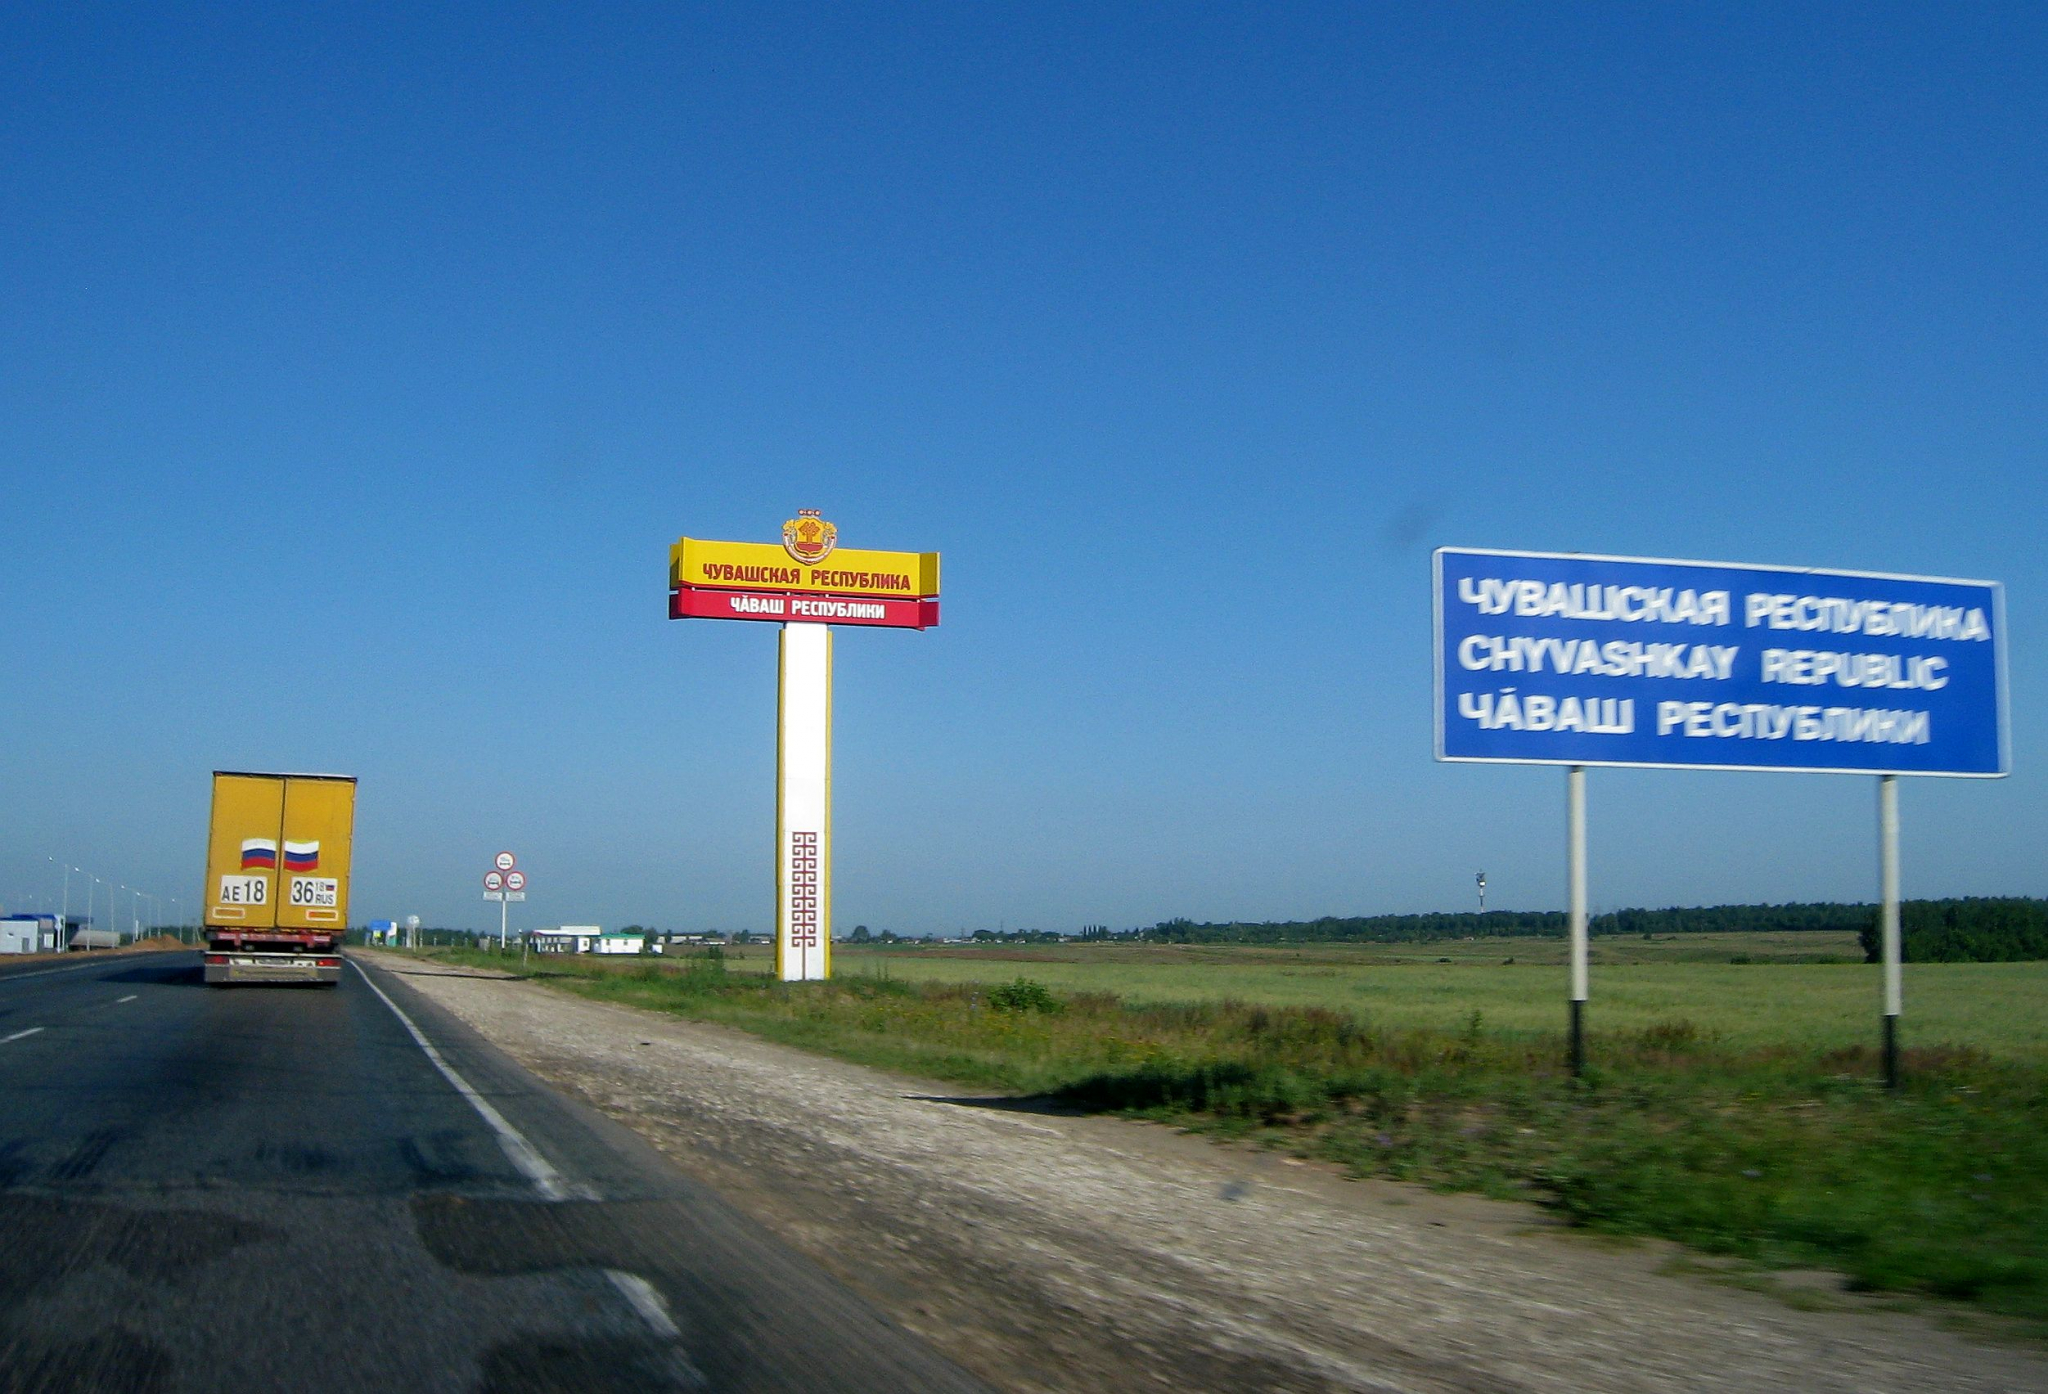 Чувашия и Татарстан хотят проложить новую границу между собой